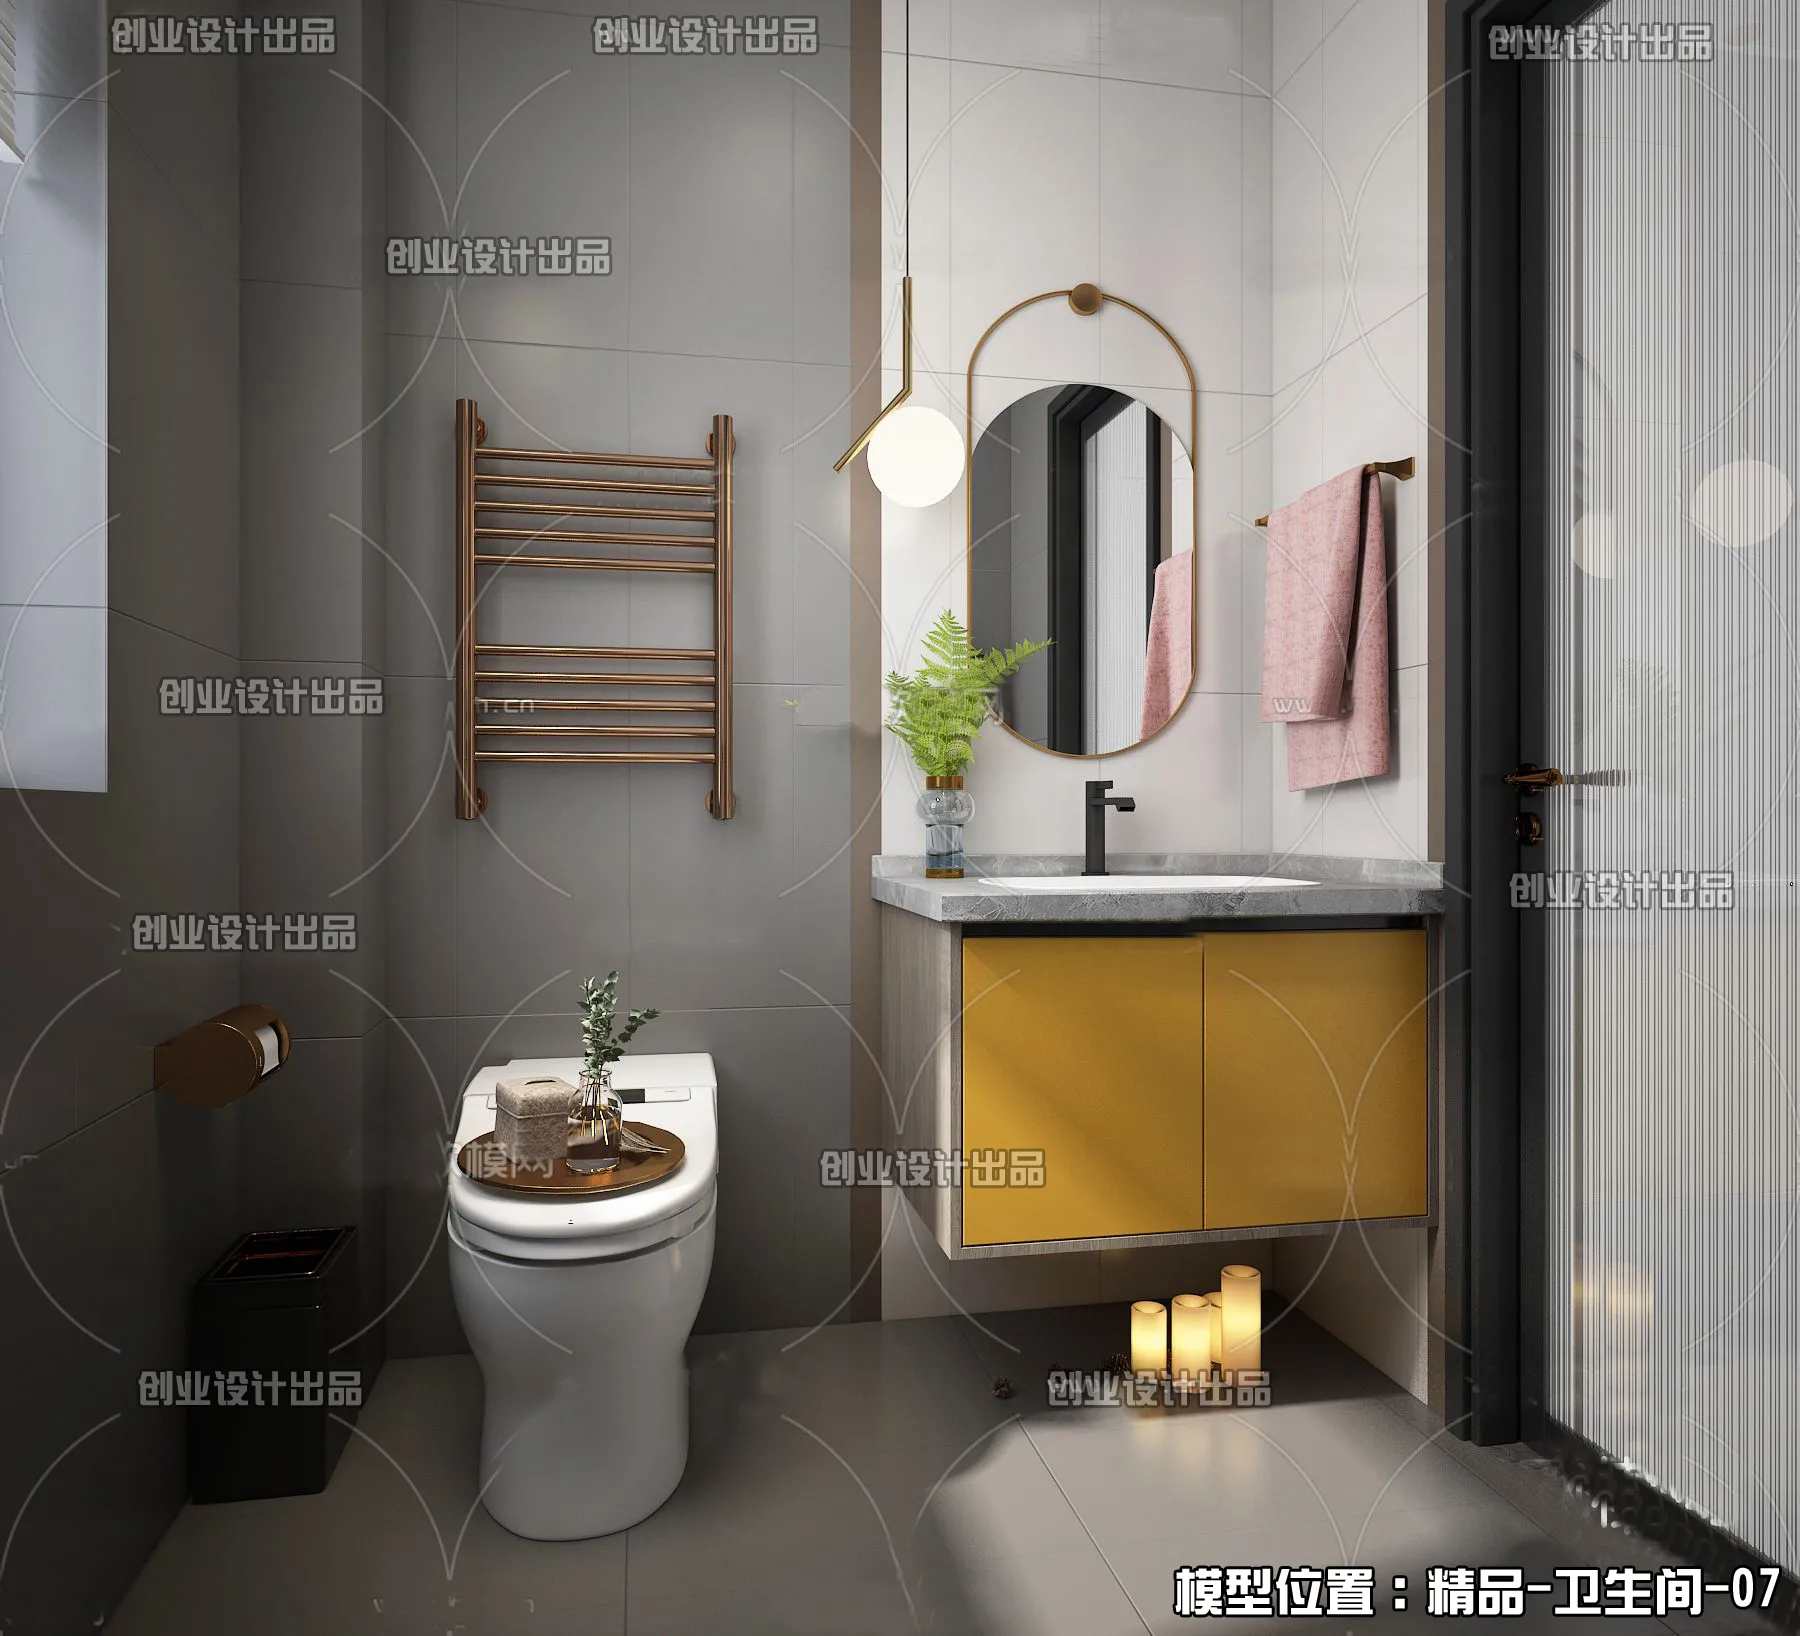 Bathroom – Scandinavian architecture – 028